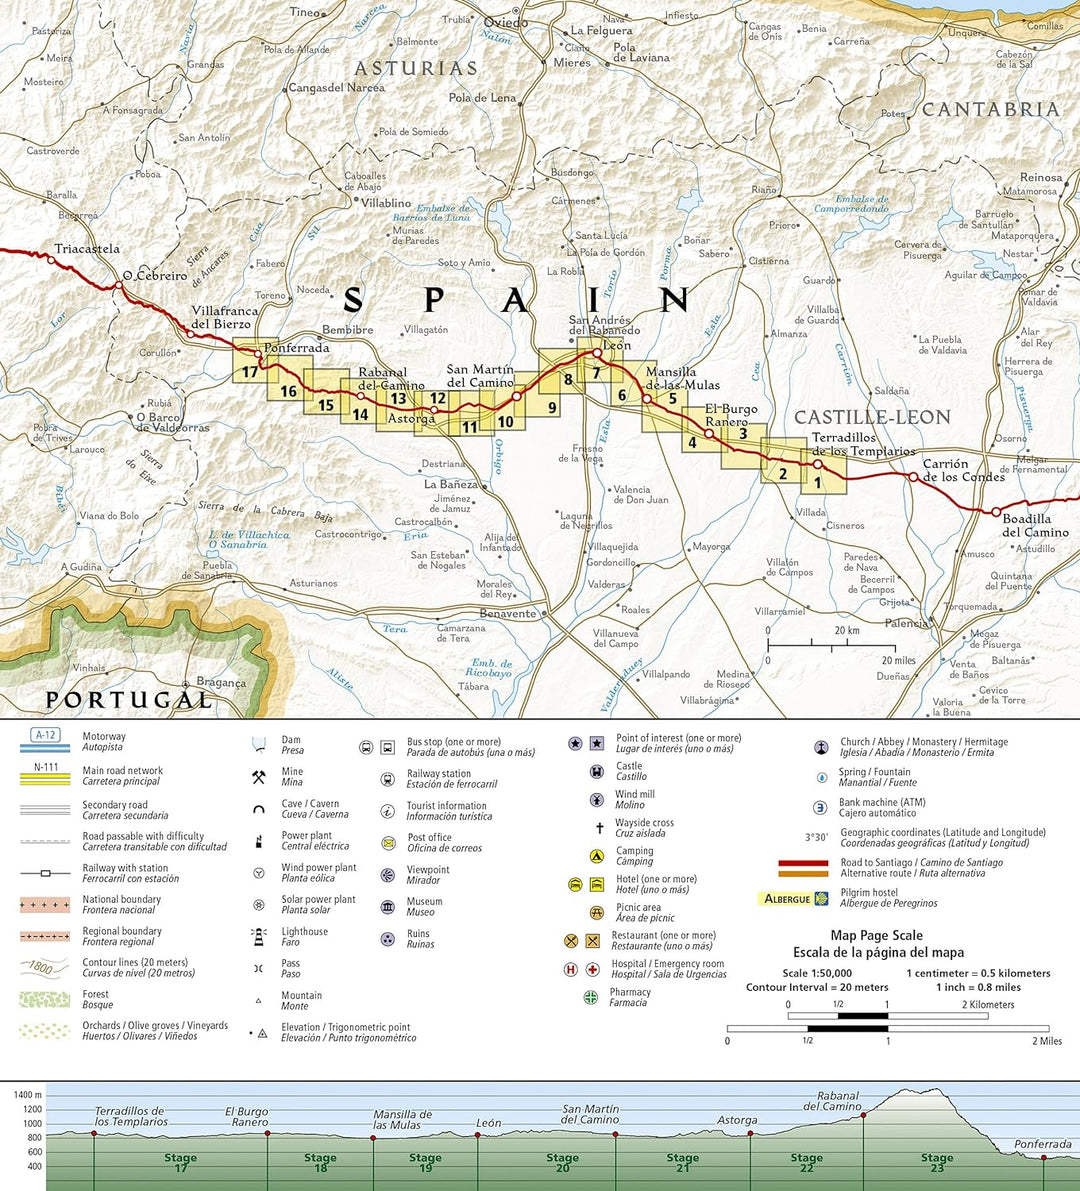 Hiking map n° 4004 - Camino de Santiago 3: Terradillos de los Templarios to Ponferrada | National Geographic